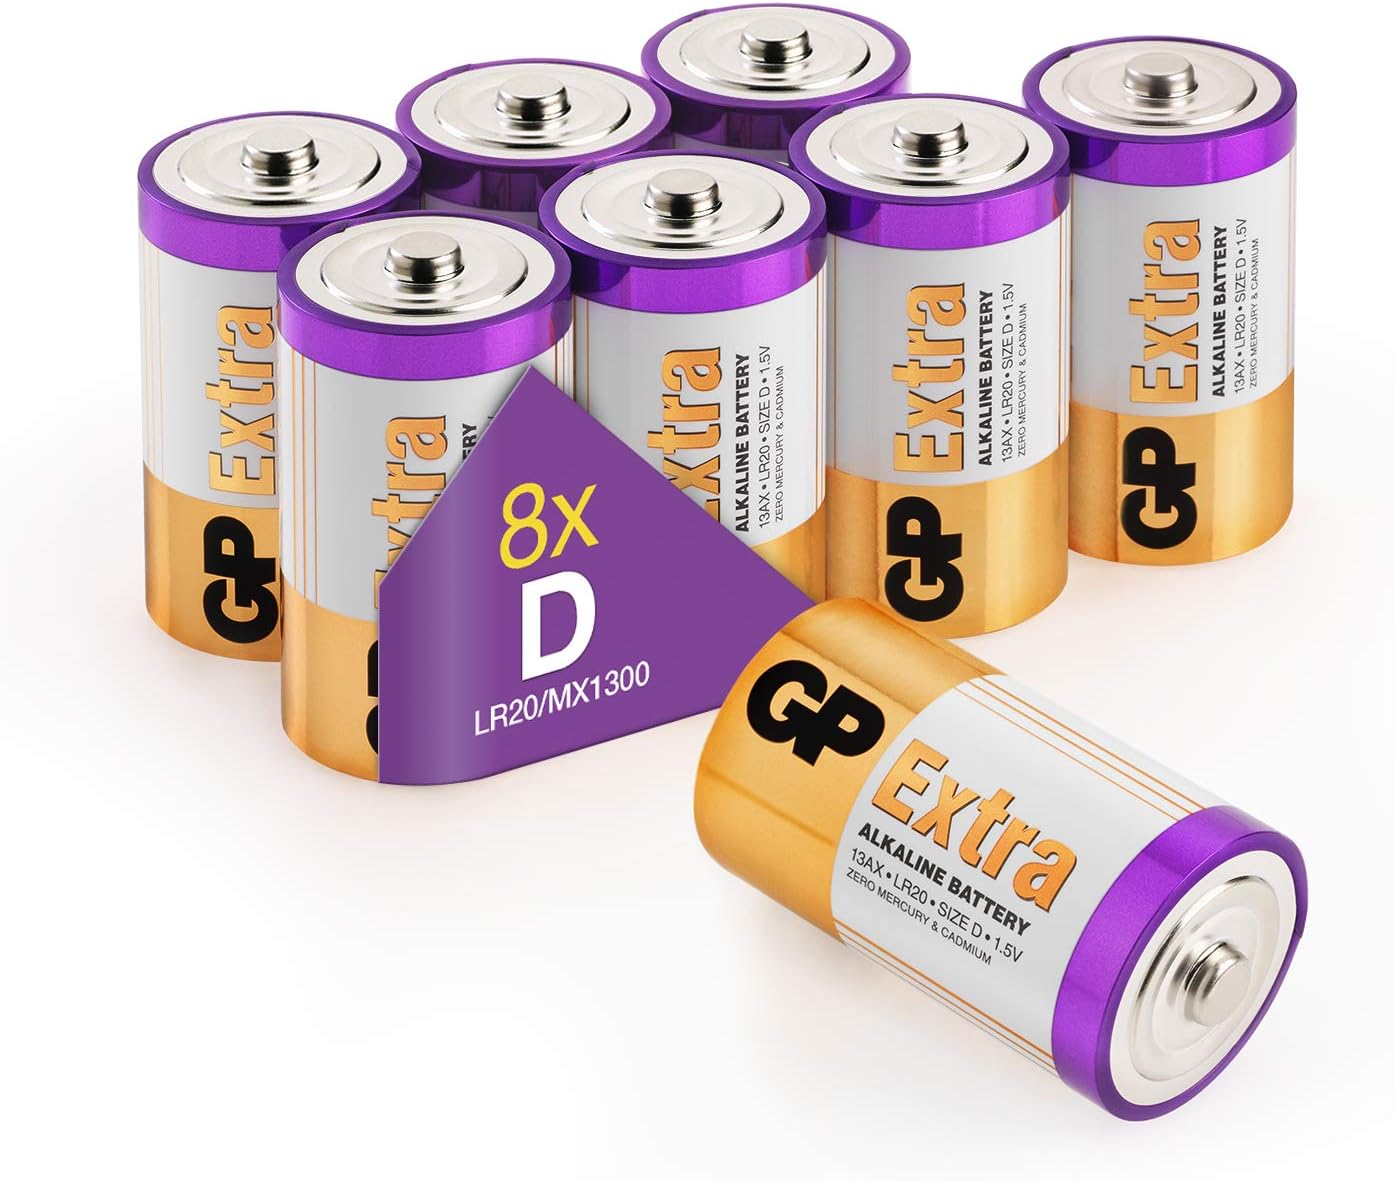 Piles D - Lot de 8 Piles, GP Extra, Batterie Type D LR20 1,5V alcaline -  Longue durée et Haute Performance pour Le Quotidien